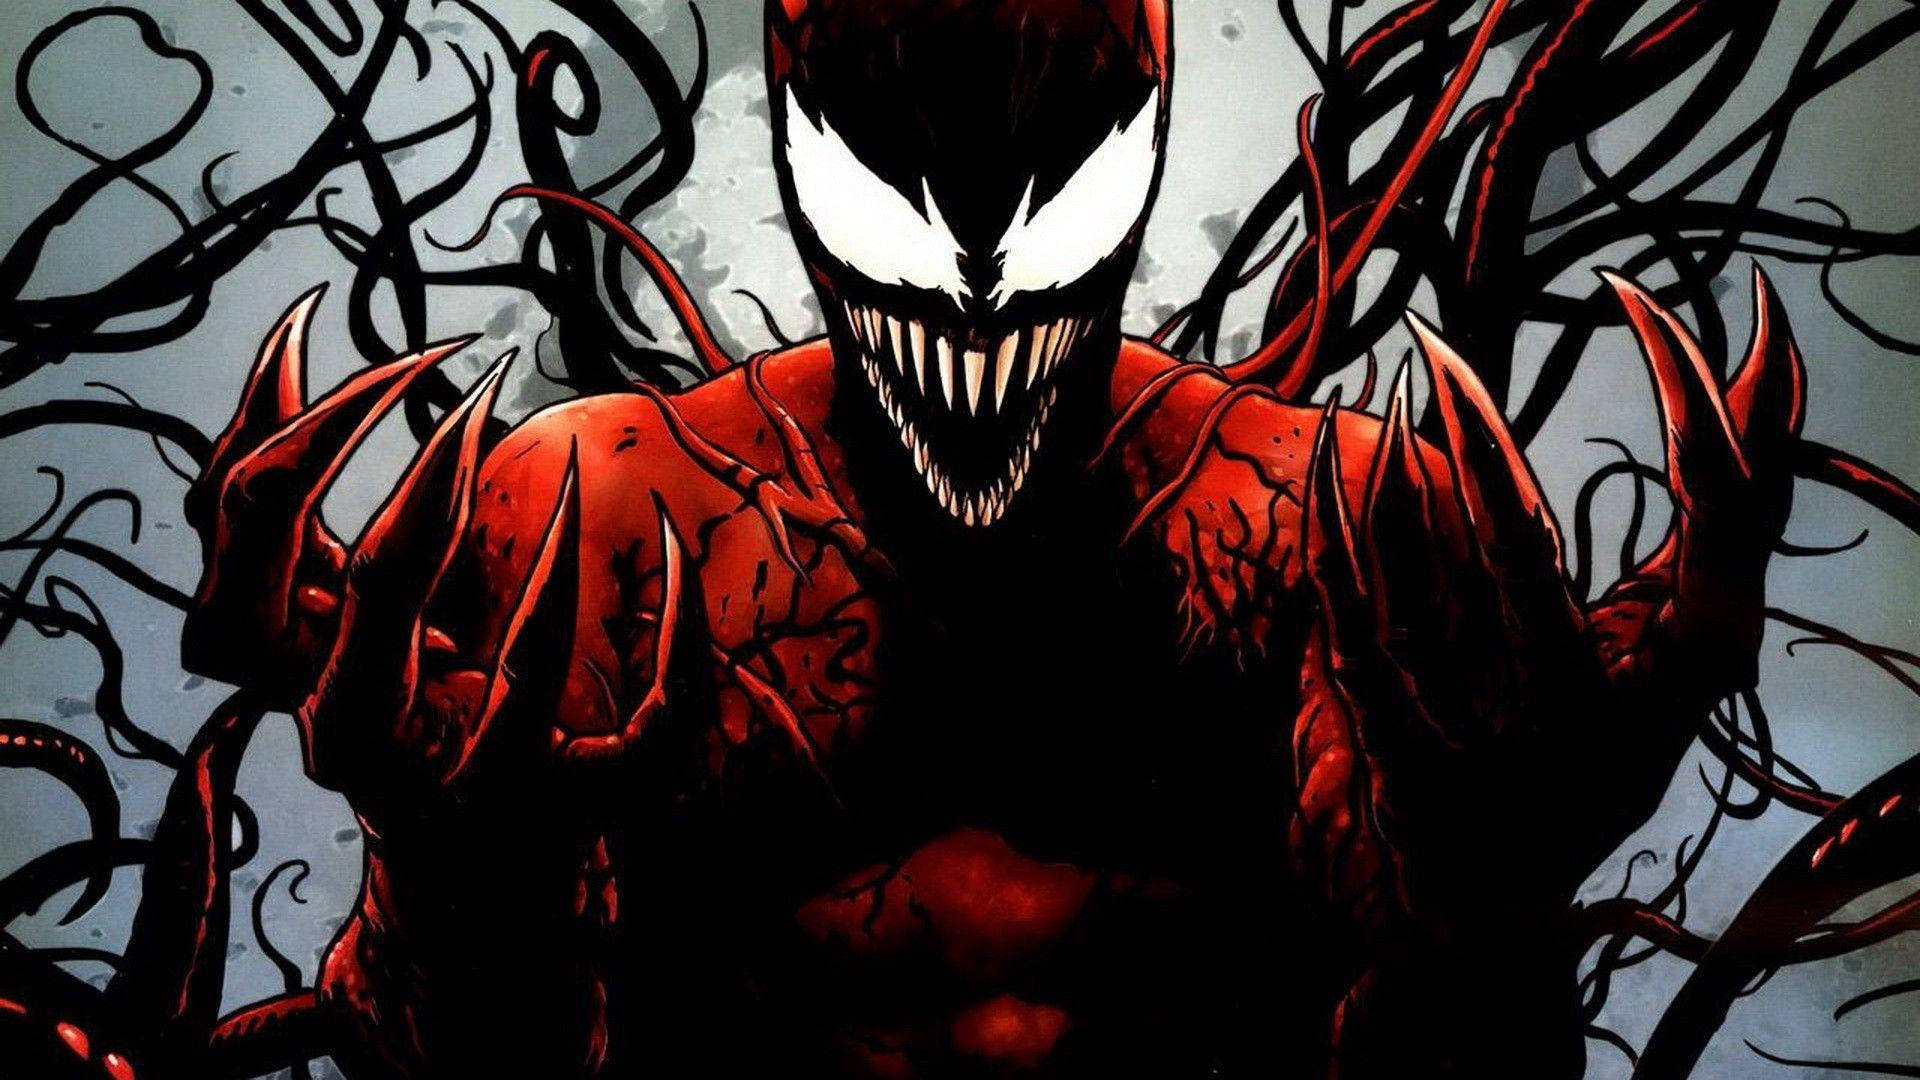 Bildantagonistische Symbiose Von Venom & Carnage Wallpaper